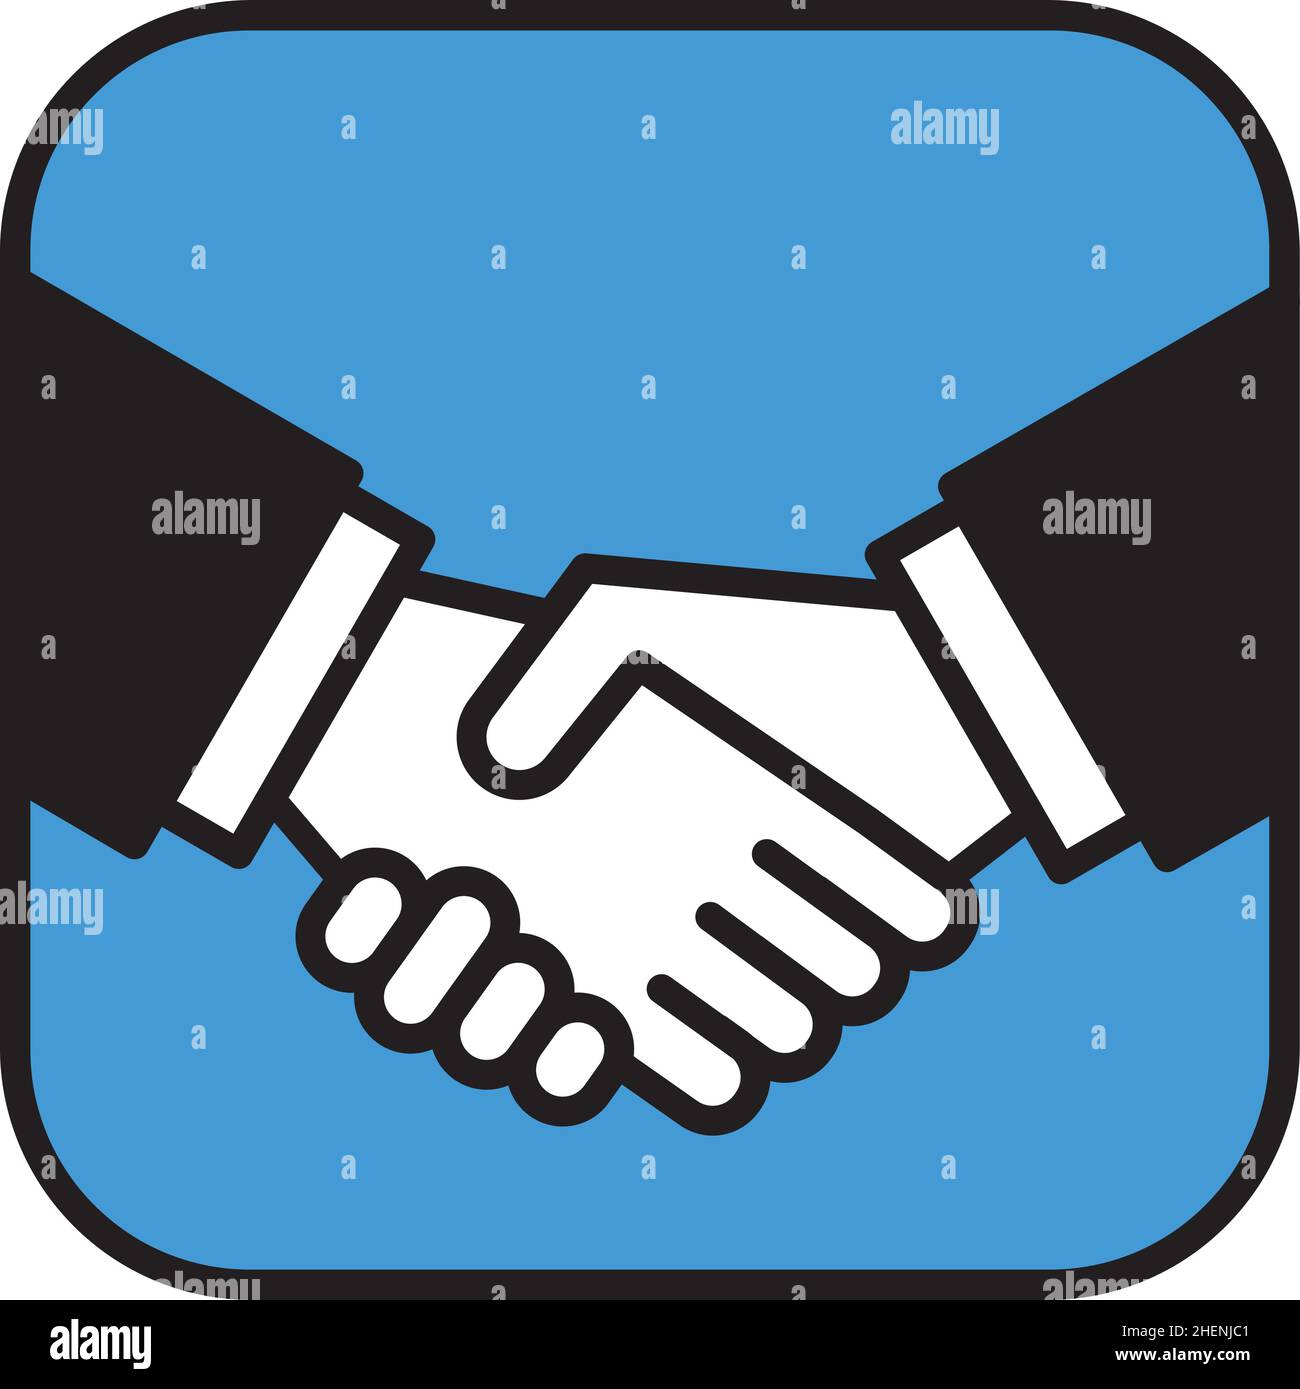 Handshake-Symbol oder Logo-Geschäftskonzept. Vektor-Illustration von zwei Geschäftsleuten, die sich bei Begrüßung oder Zustimmung die Hände schütteln. Stock Vektor